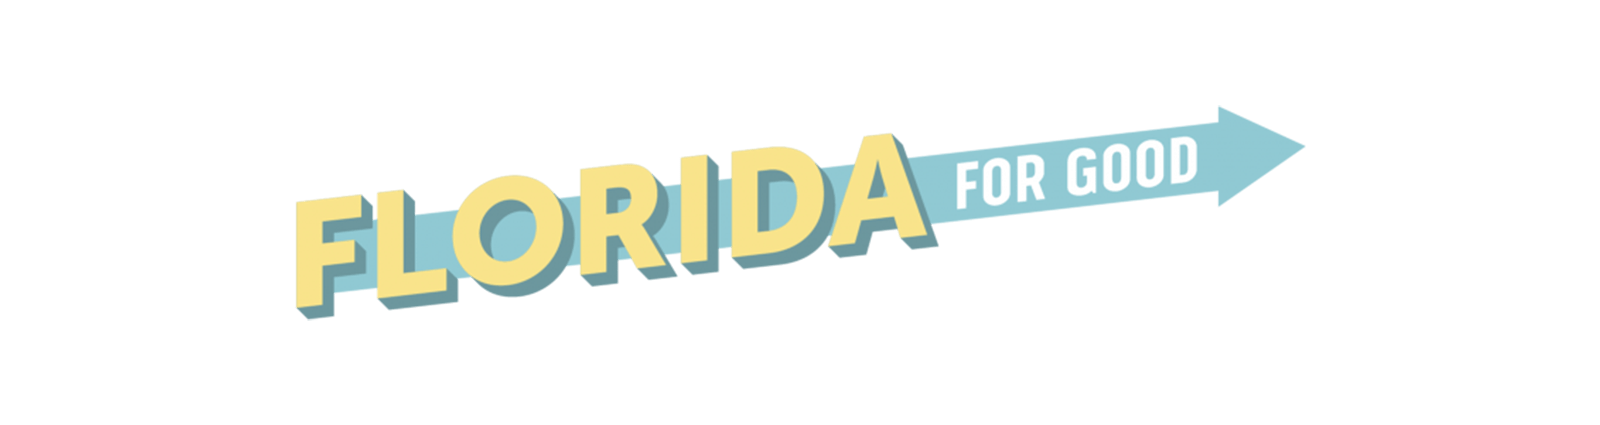 Florida For Good